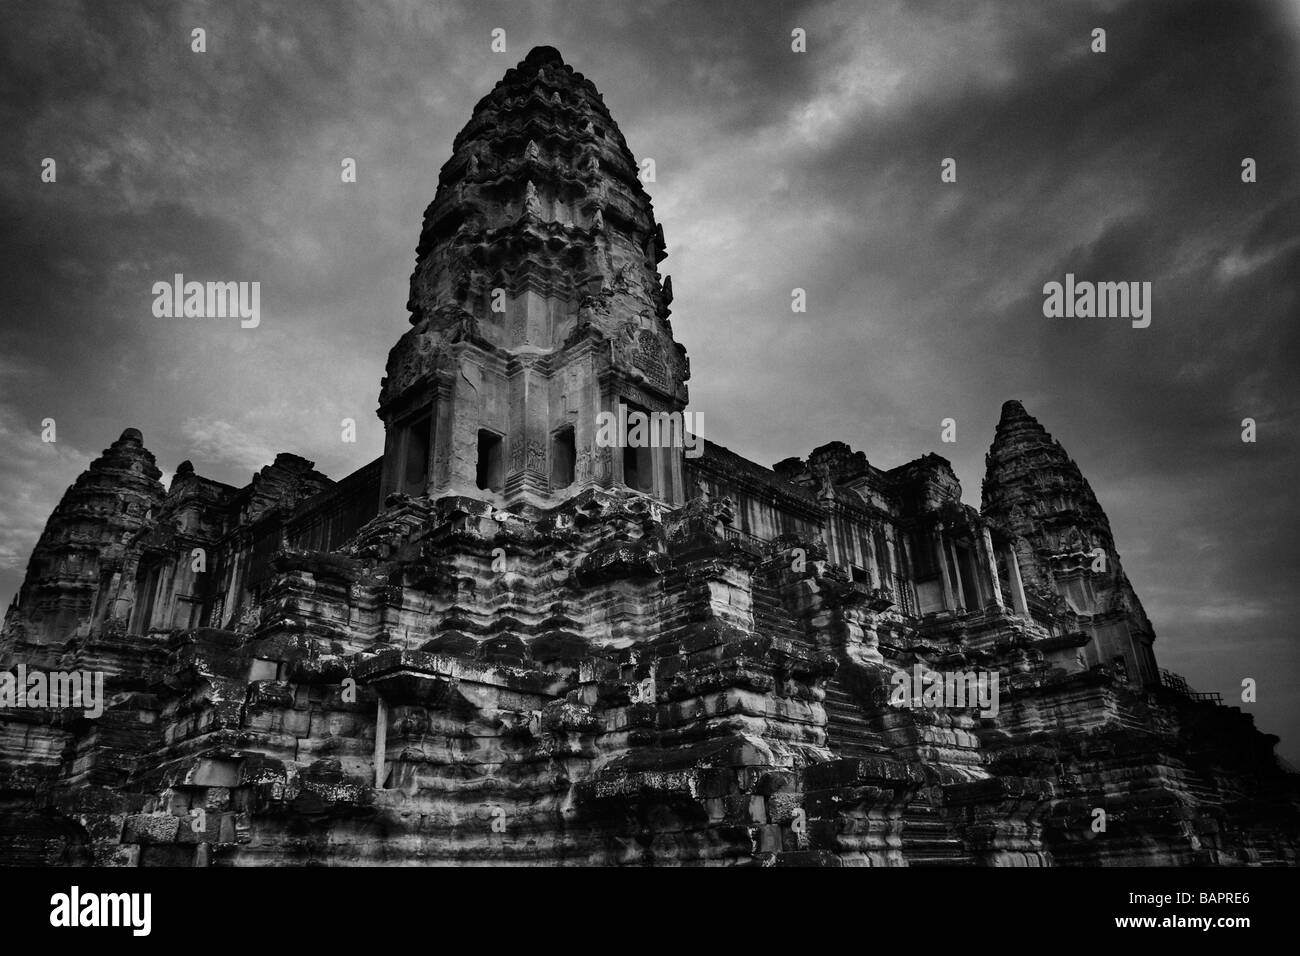 Las torres centrales de la corte interna en Angkor Wat, cerca de Siem Reap, Reino de Camboya. Foto de stock